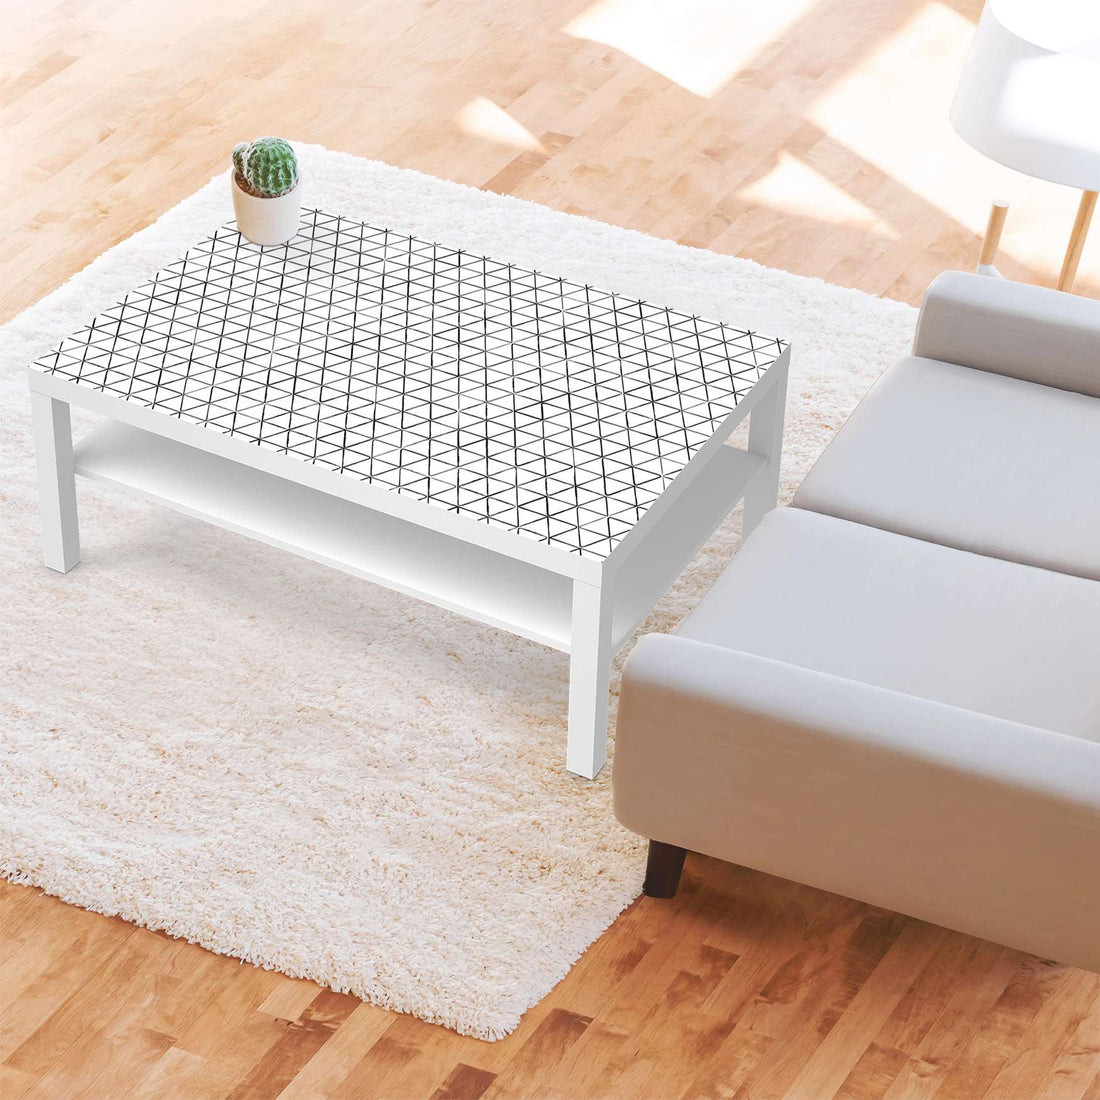 Klebefolie Mediana - IKEA Lack Tisch 118x78 cm - Wohnzimmer